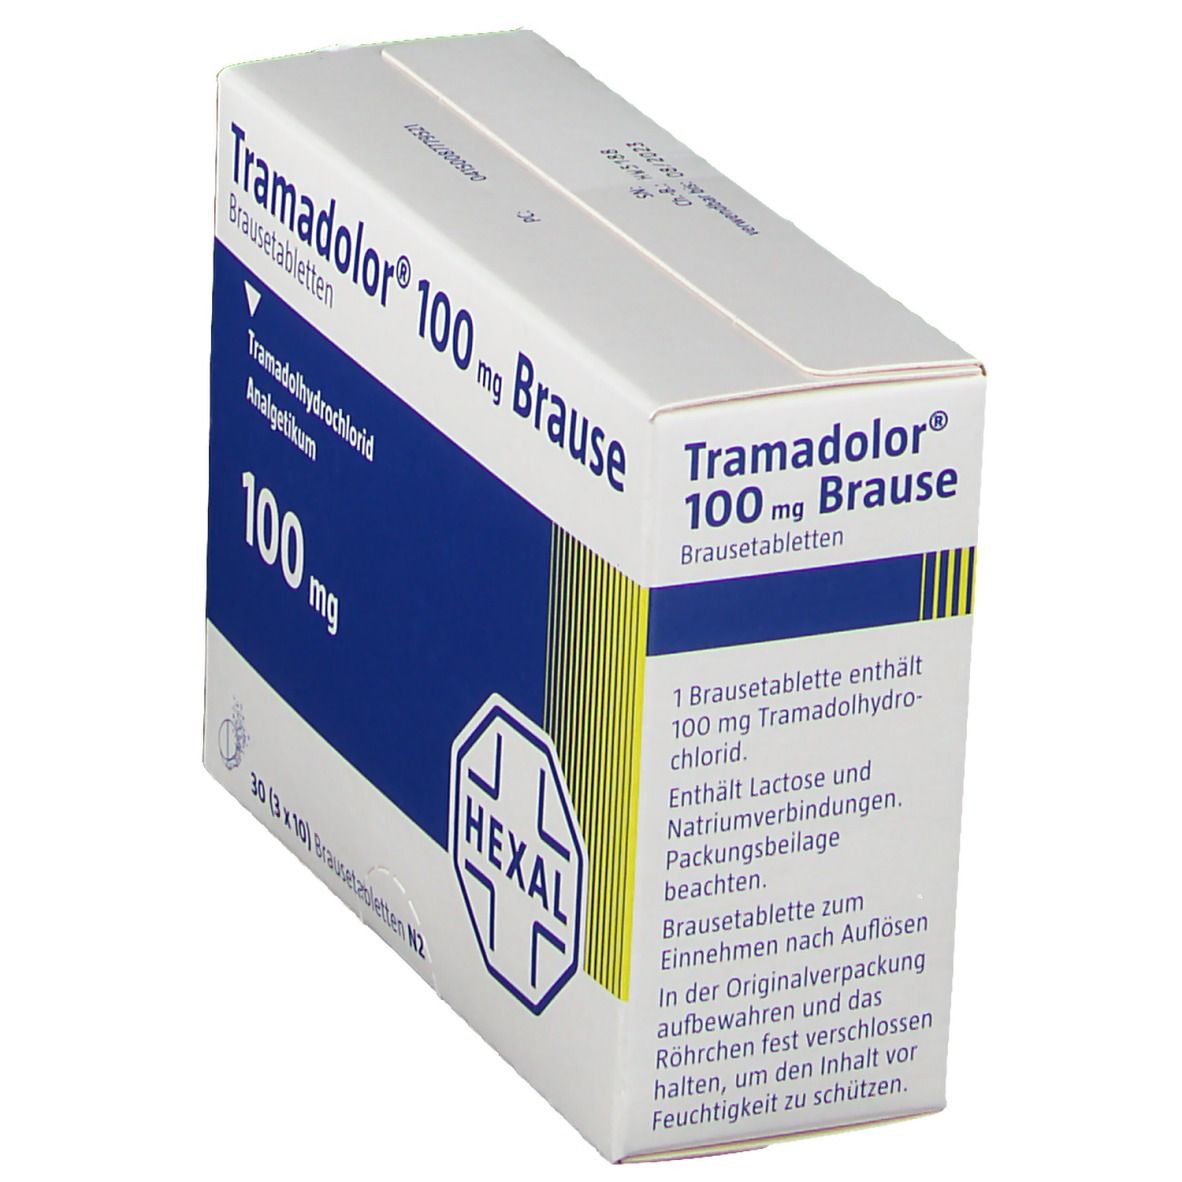 Tramadolor® 100 mg Brause